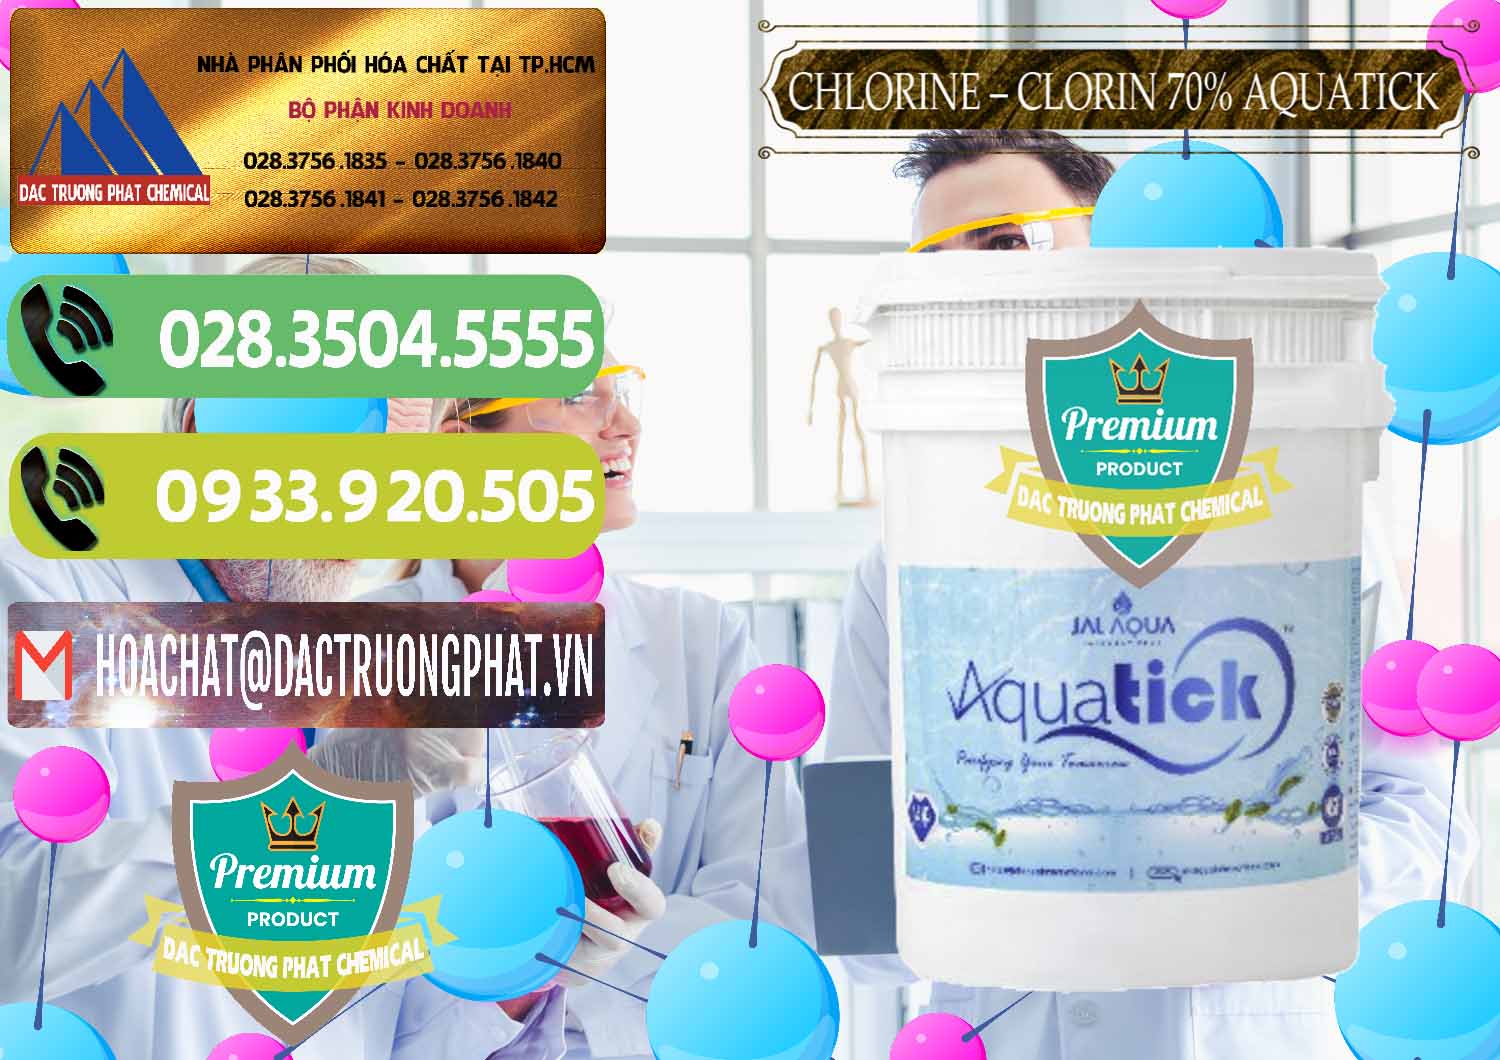 Công ty bán ( phân phối ) Chlorine – Clorin 70% Aquatick Thùng Cao Jal Aqua Ấn Độ India - 0237 - Công ty nhập khẩu và phân phối hóa chất tại TP.HCM - hoachatmientay.vn